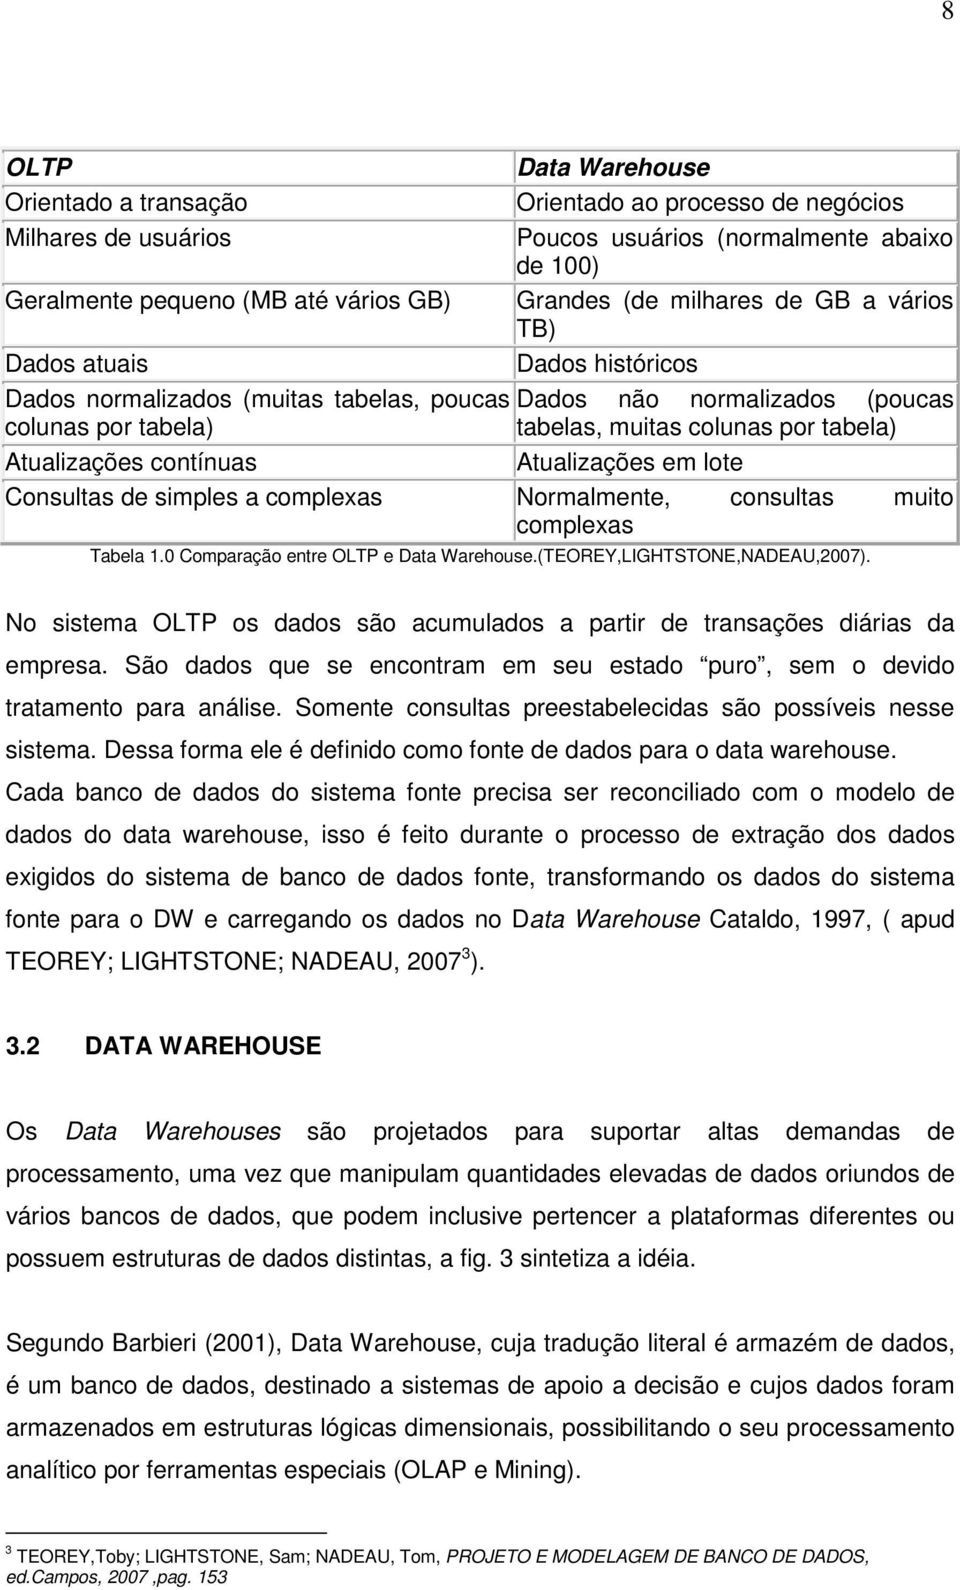 Atualizações contínuas Atualizações em lote Consultas de simples a complexas Normalmente, consultas muito complexas Tabela 1.0 Comparação entre OLTP e Data Warehouse.(TEOREY,LIGHTSTONE,NADEAU,2007).